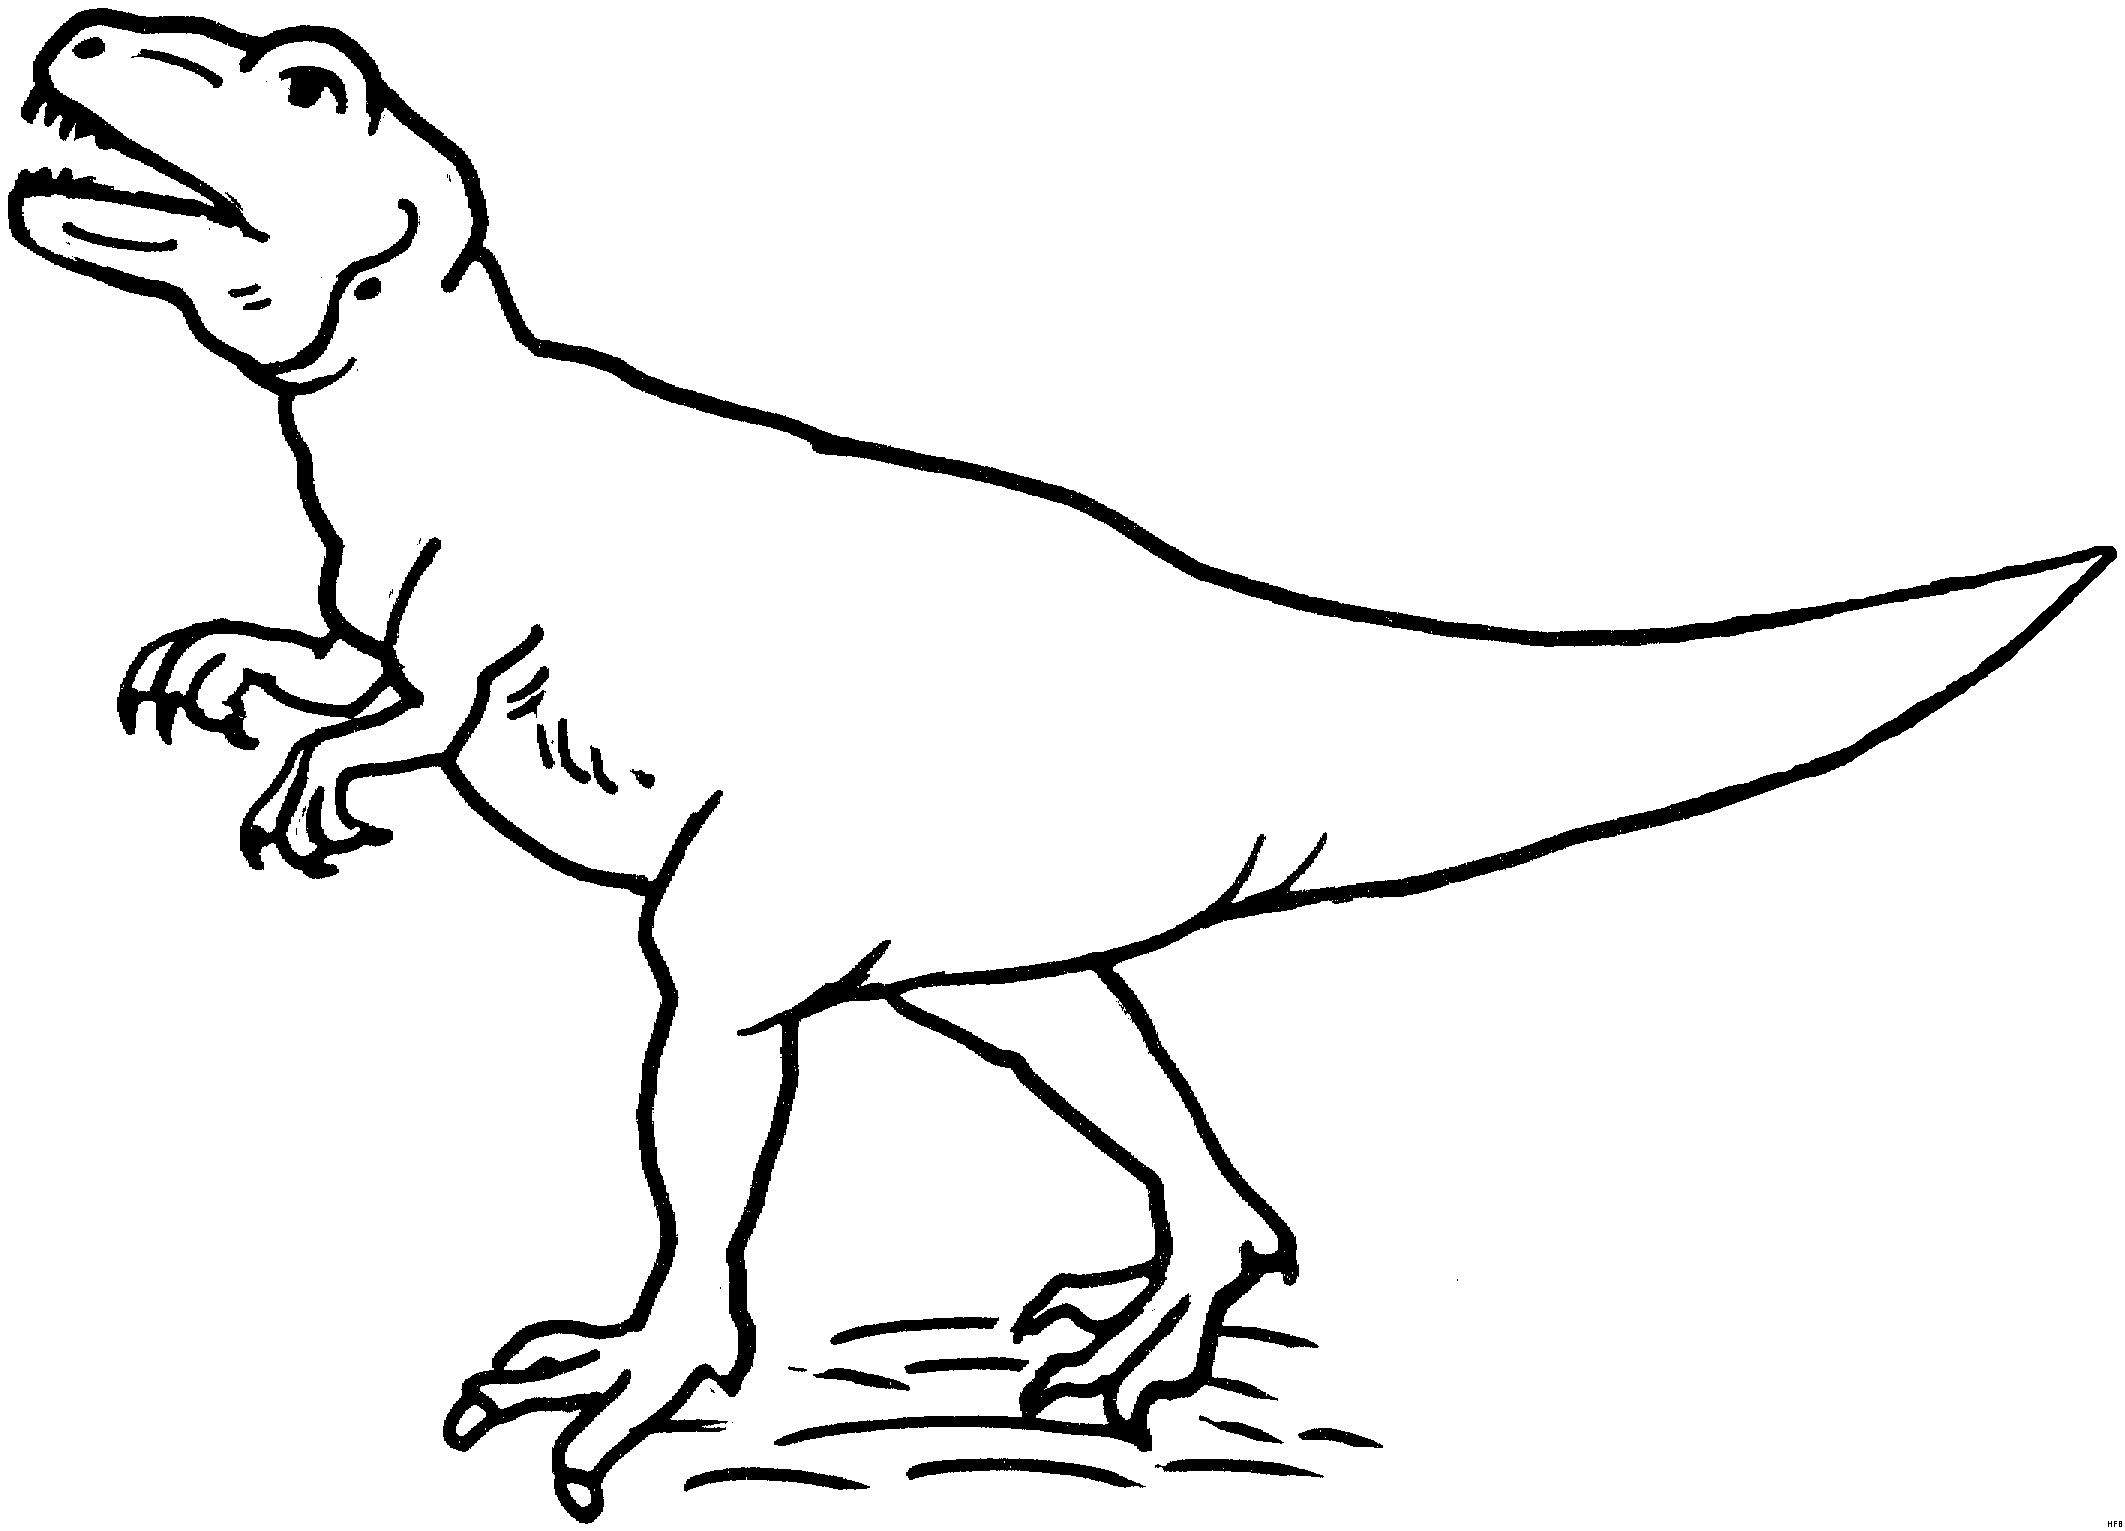 Malvorlagen Dinosaurier T-Rex
 t rex ausmalbild – Ausmalbilder für kinder